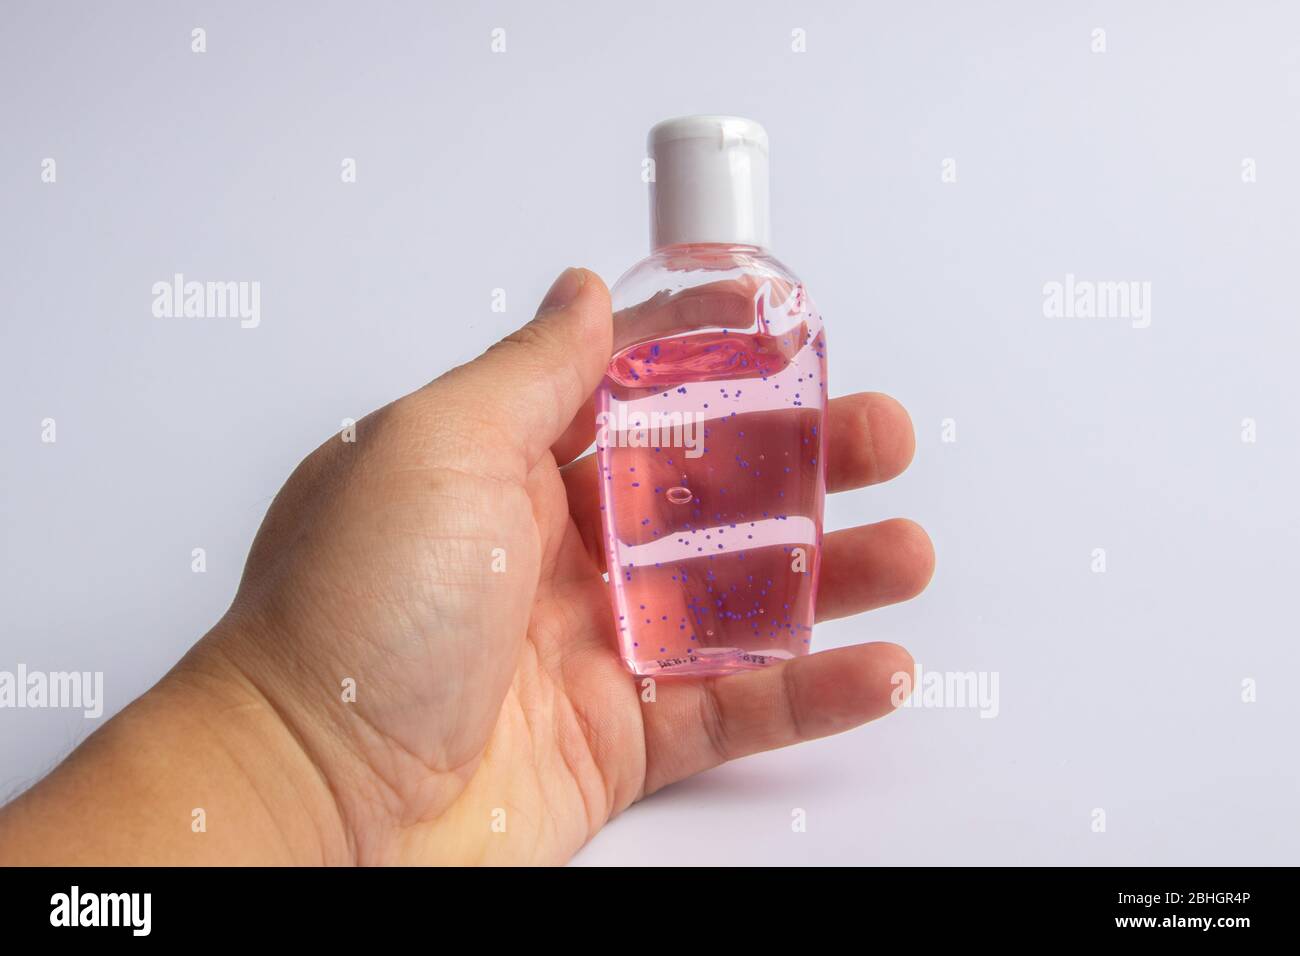 Gel igienizzante per mani per coronavirus per lavare le mani per la prevenzione del virus influenzale. Prodotto disinfettante antimicrobico a base di alcool su fondo bianco Foto Stock